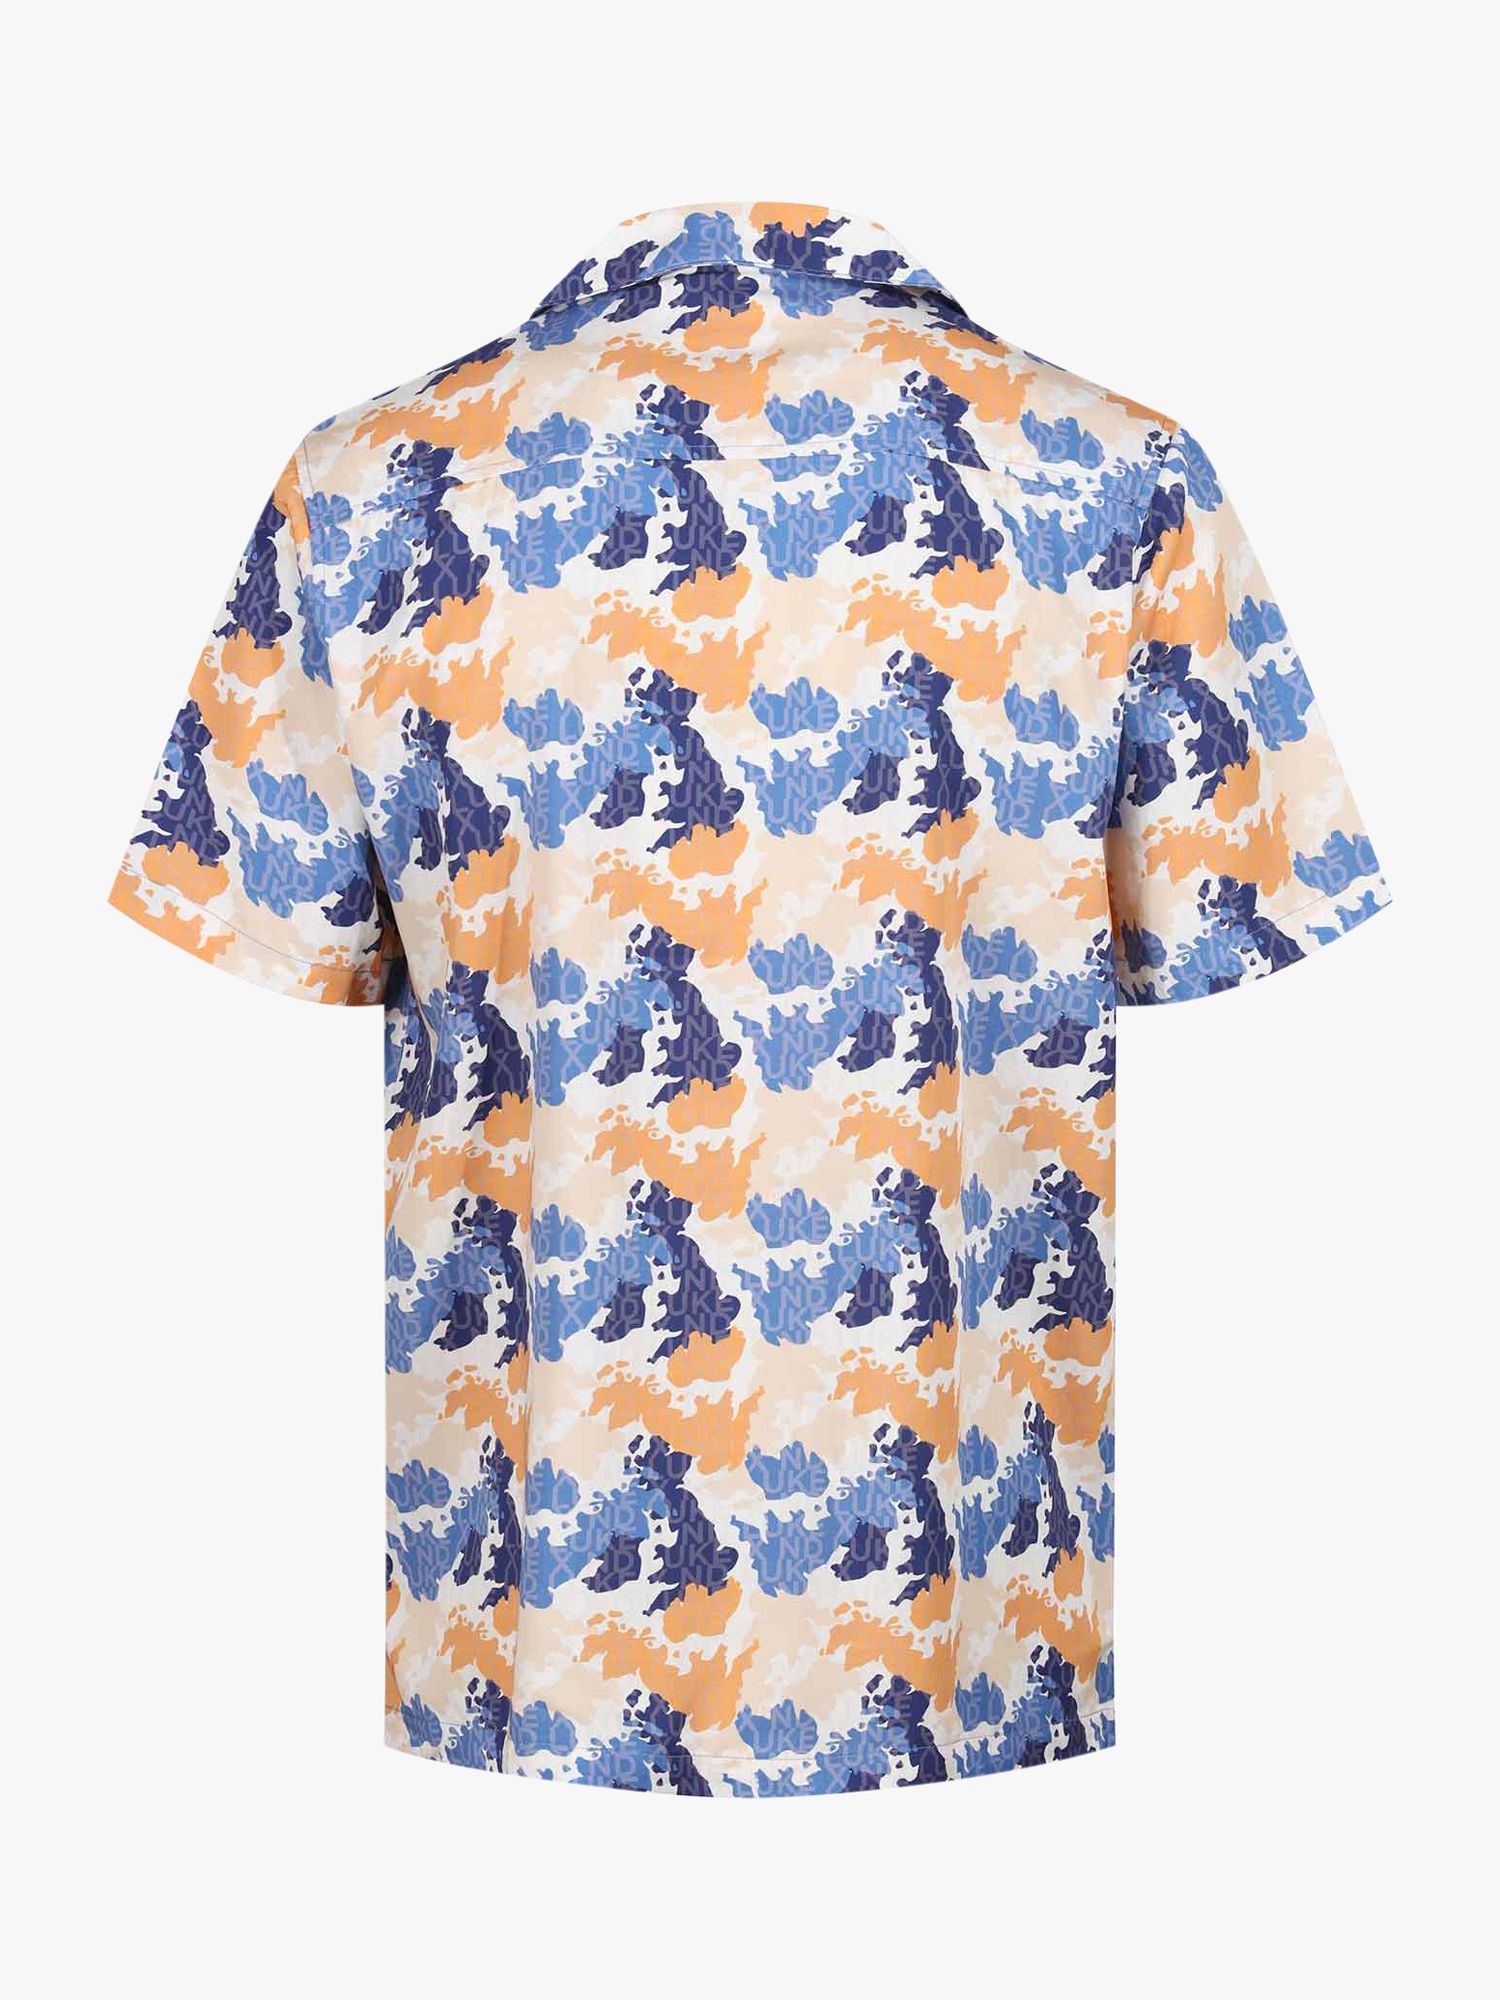 LUKE 1977 Mamba Camouflage Print Shirt, Apricot/Multi, S